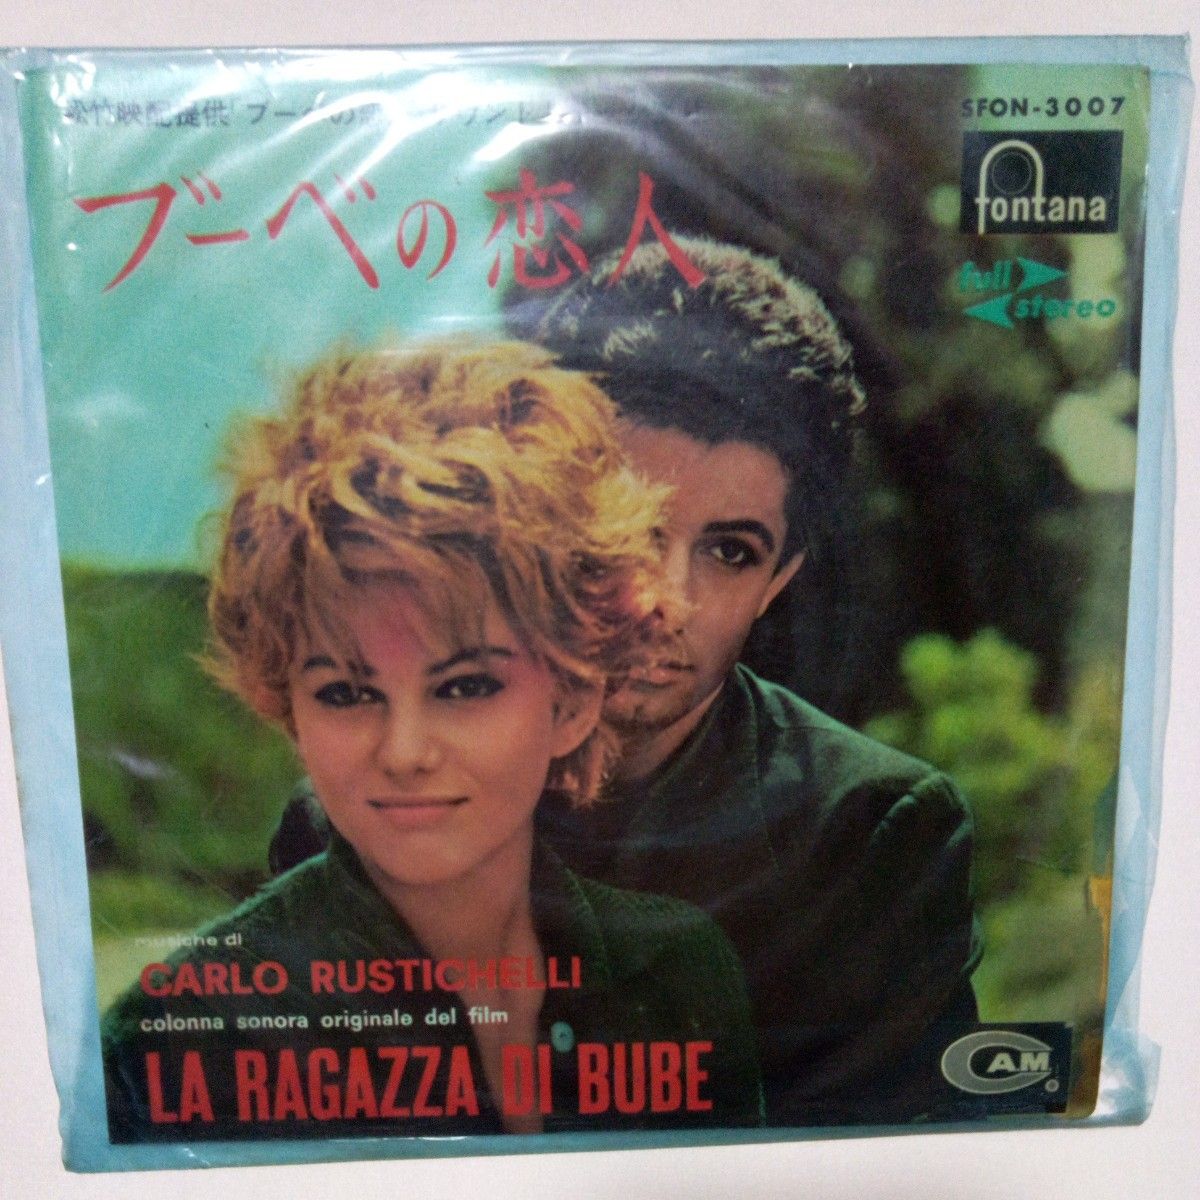 【レコード】イタリア映画『ブーベの恋人』サウンドトラックより 日本ビクター クラウディア・カルディナーレ ジョージ・チャキリス